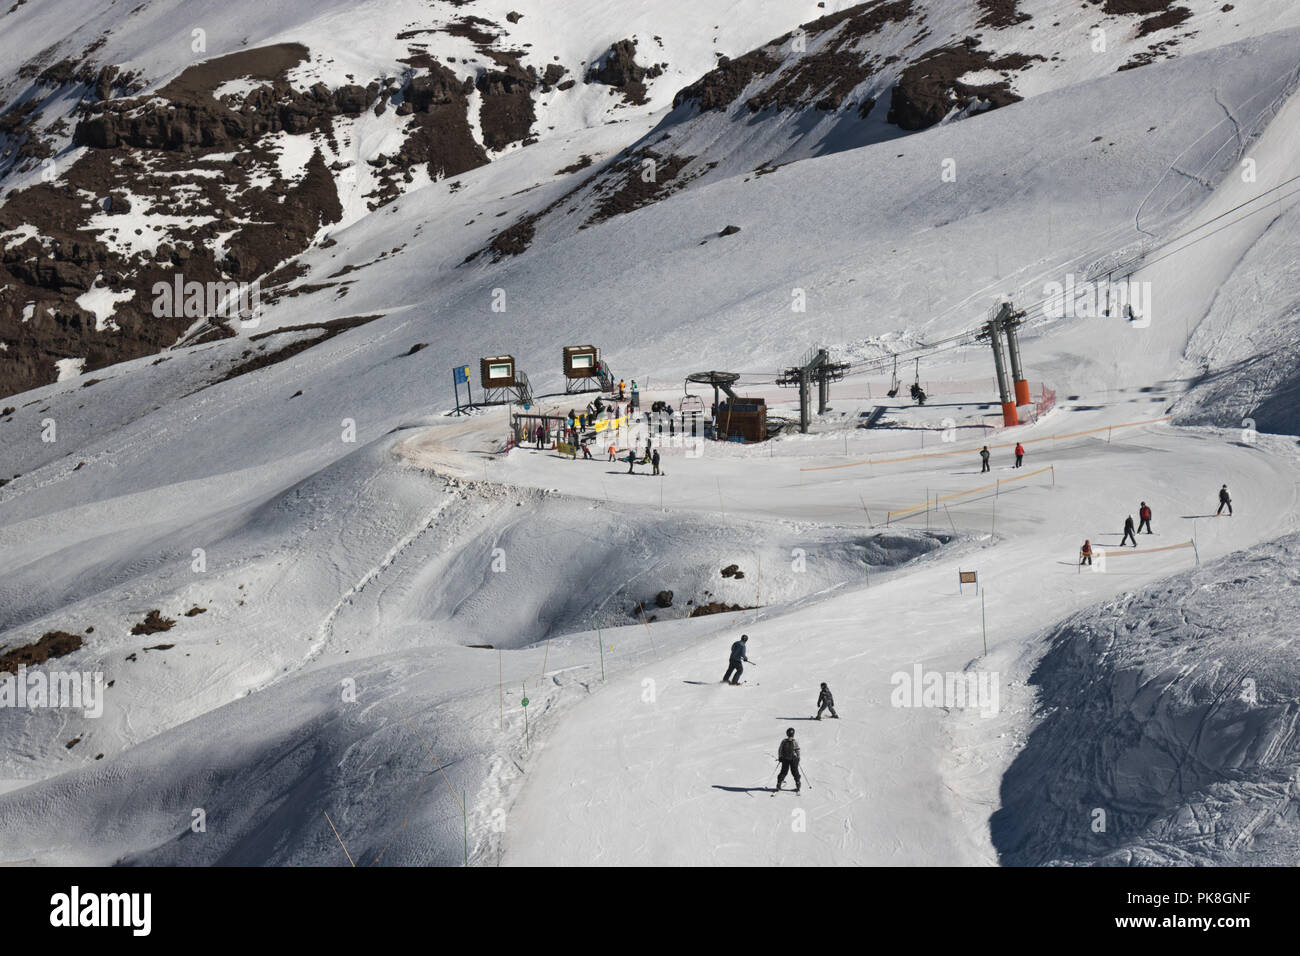 Blick auf Leute genießen Valle Nevado Skipiste. Dieses ist ein großartiges Resort für Ski und Snowboard Kurse in den Anden, mit vielen Wanderwegen und Aktivitäten Stockfoto